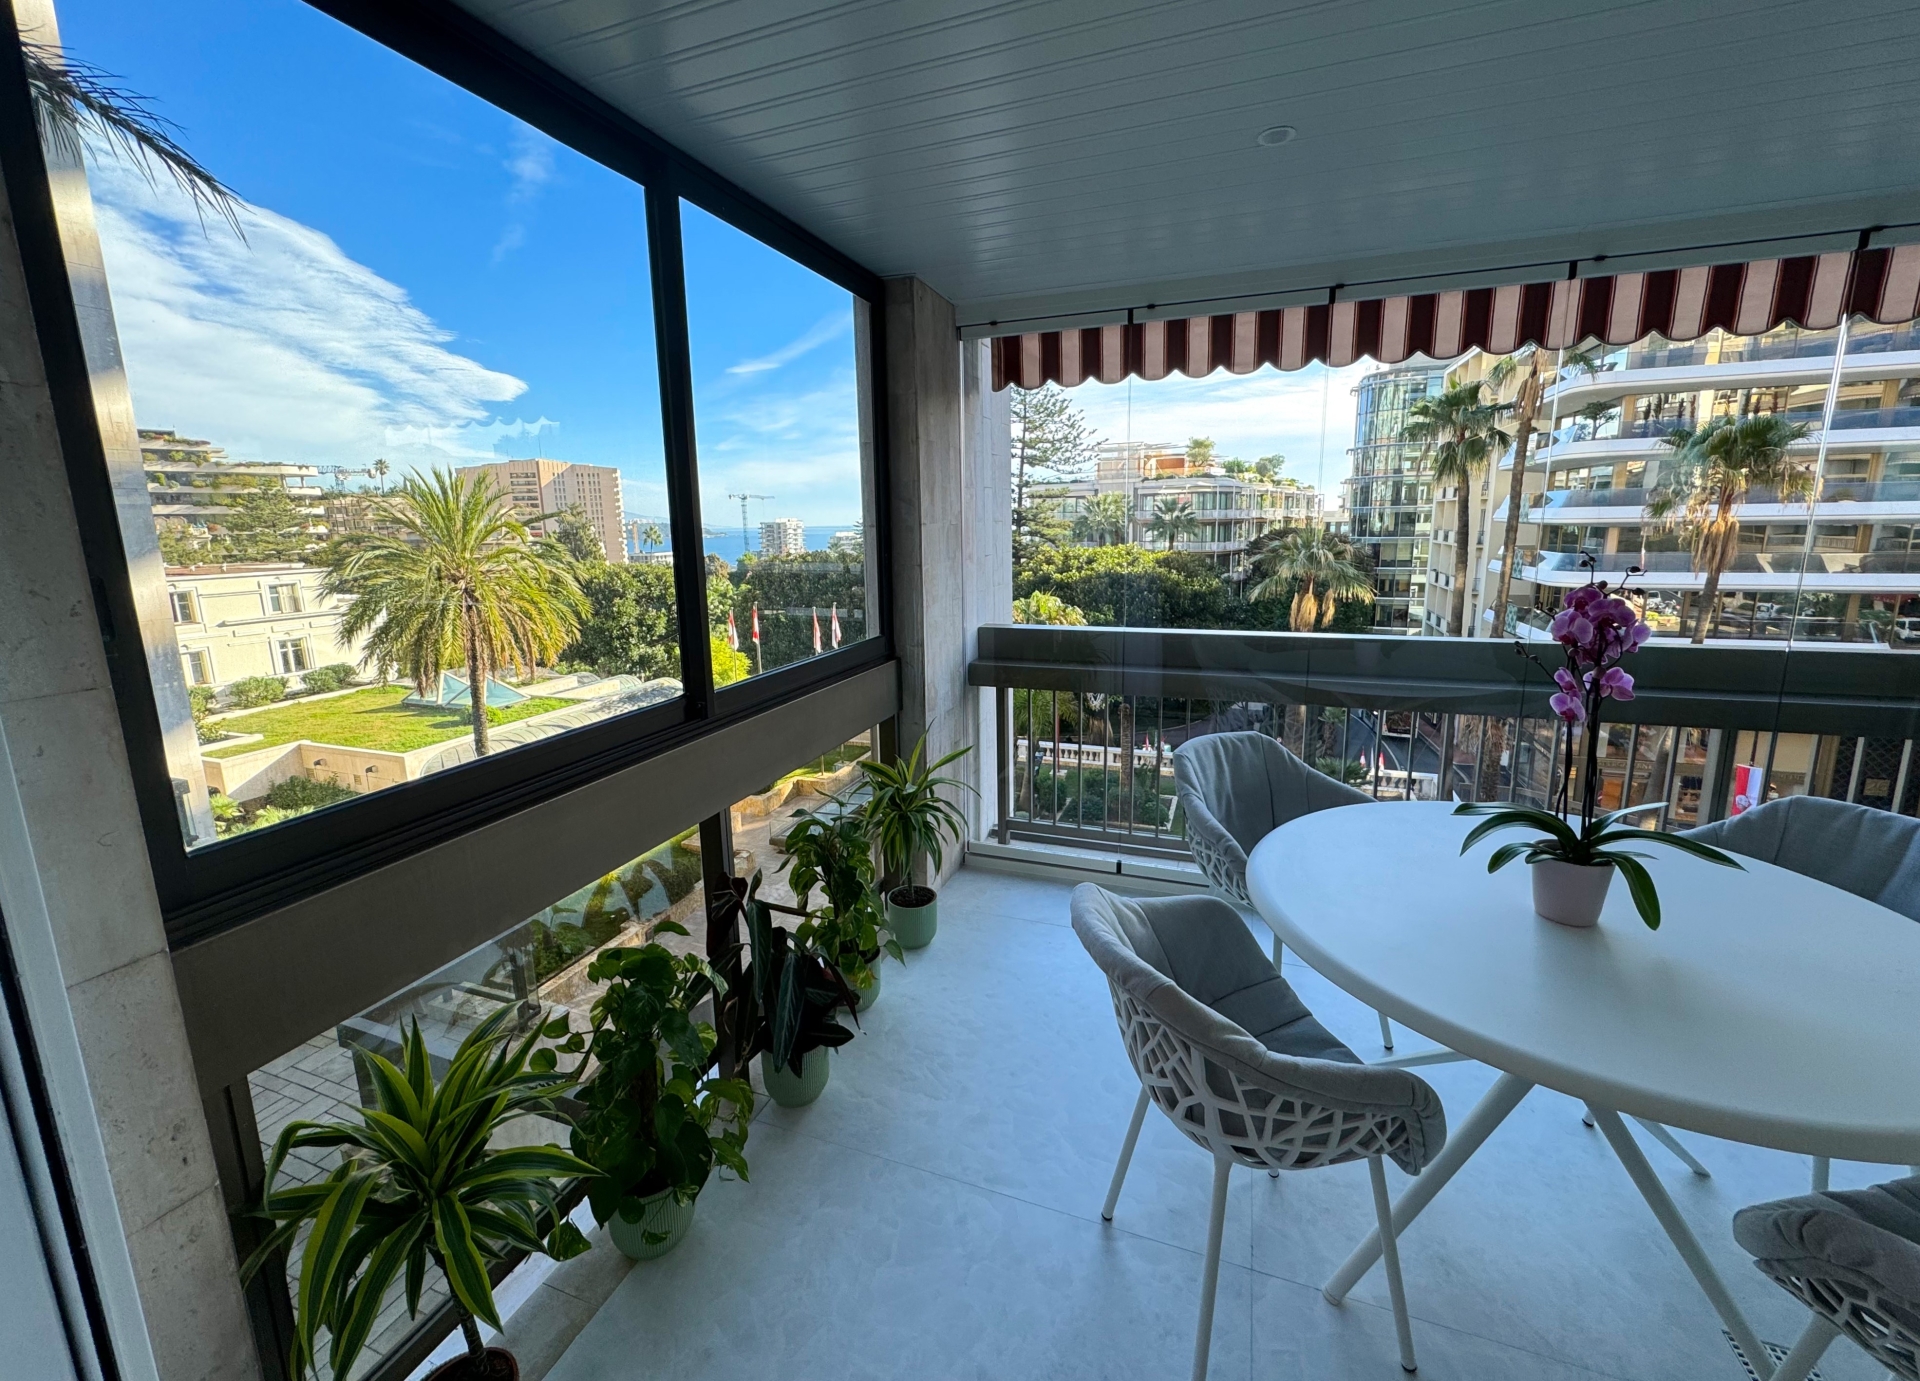 Dotta Appartement de 2 pieces a vendre - PARK PALACE - Monte-Carlo - Monaco - img1